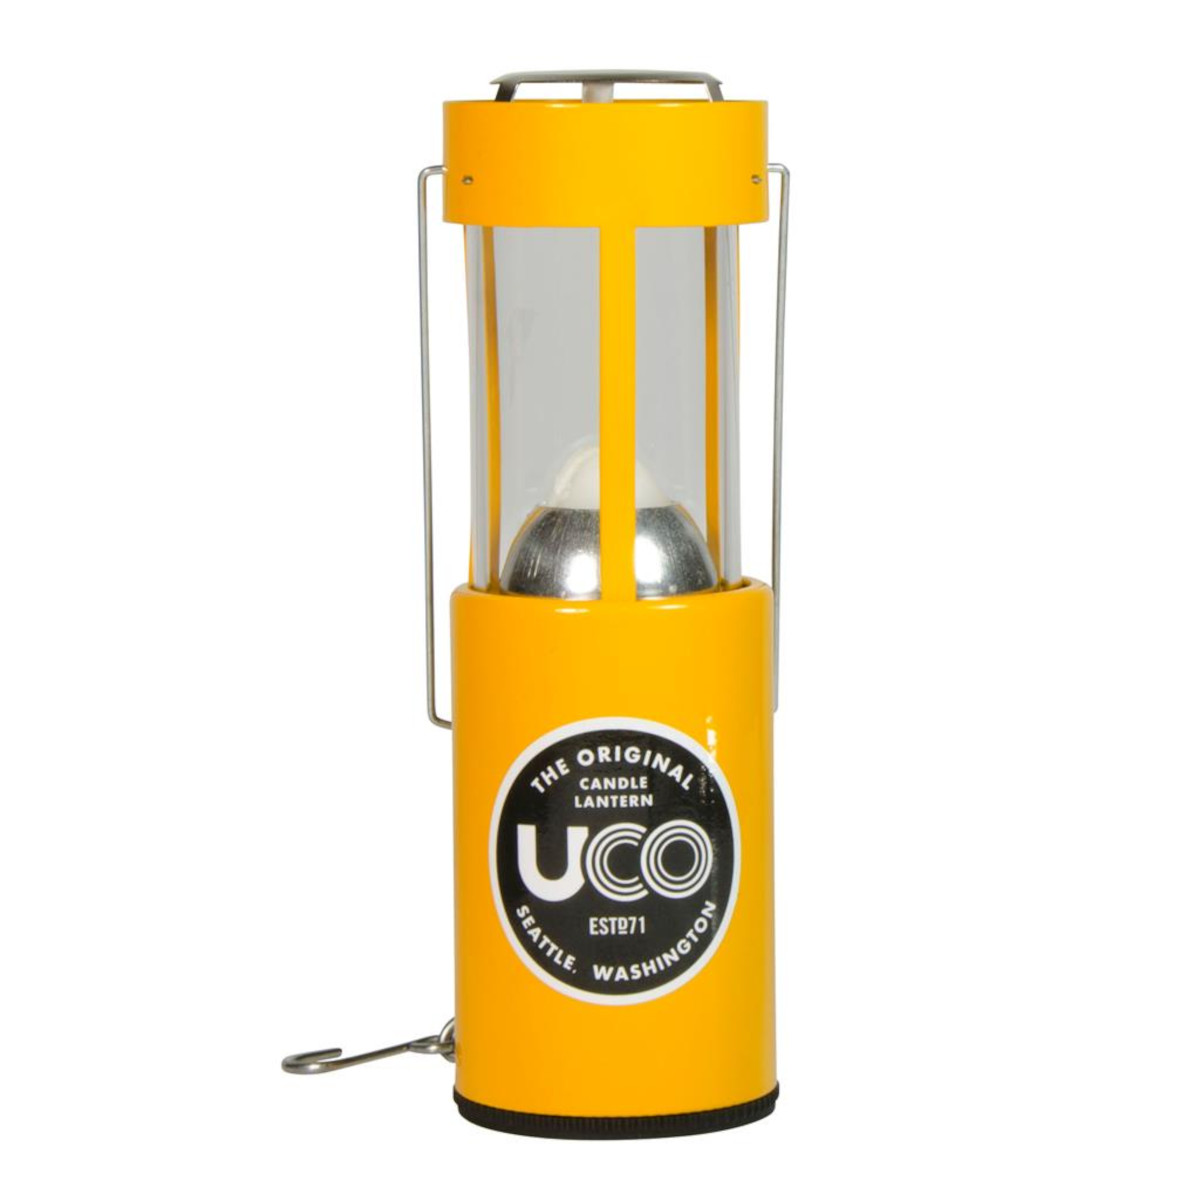 UCO Original Bougie Lanterne Verre de remplacement de cheminée pour 9 H bougie lanterne 